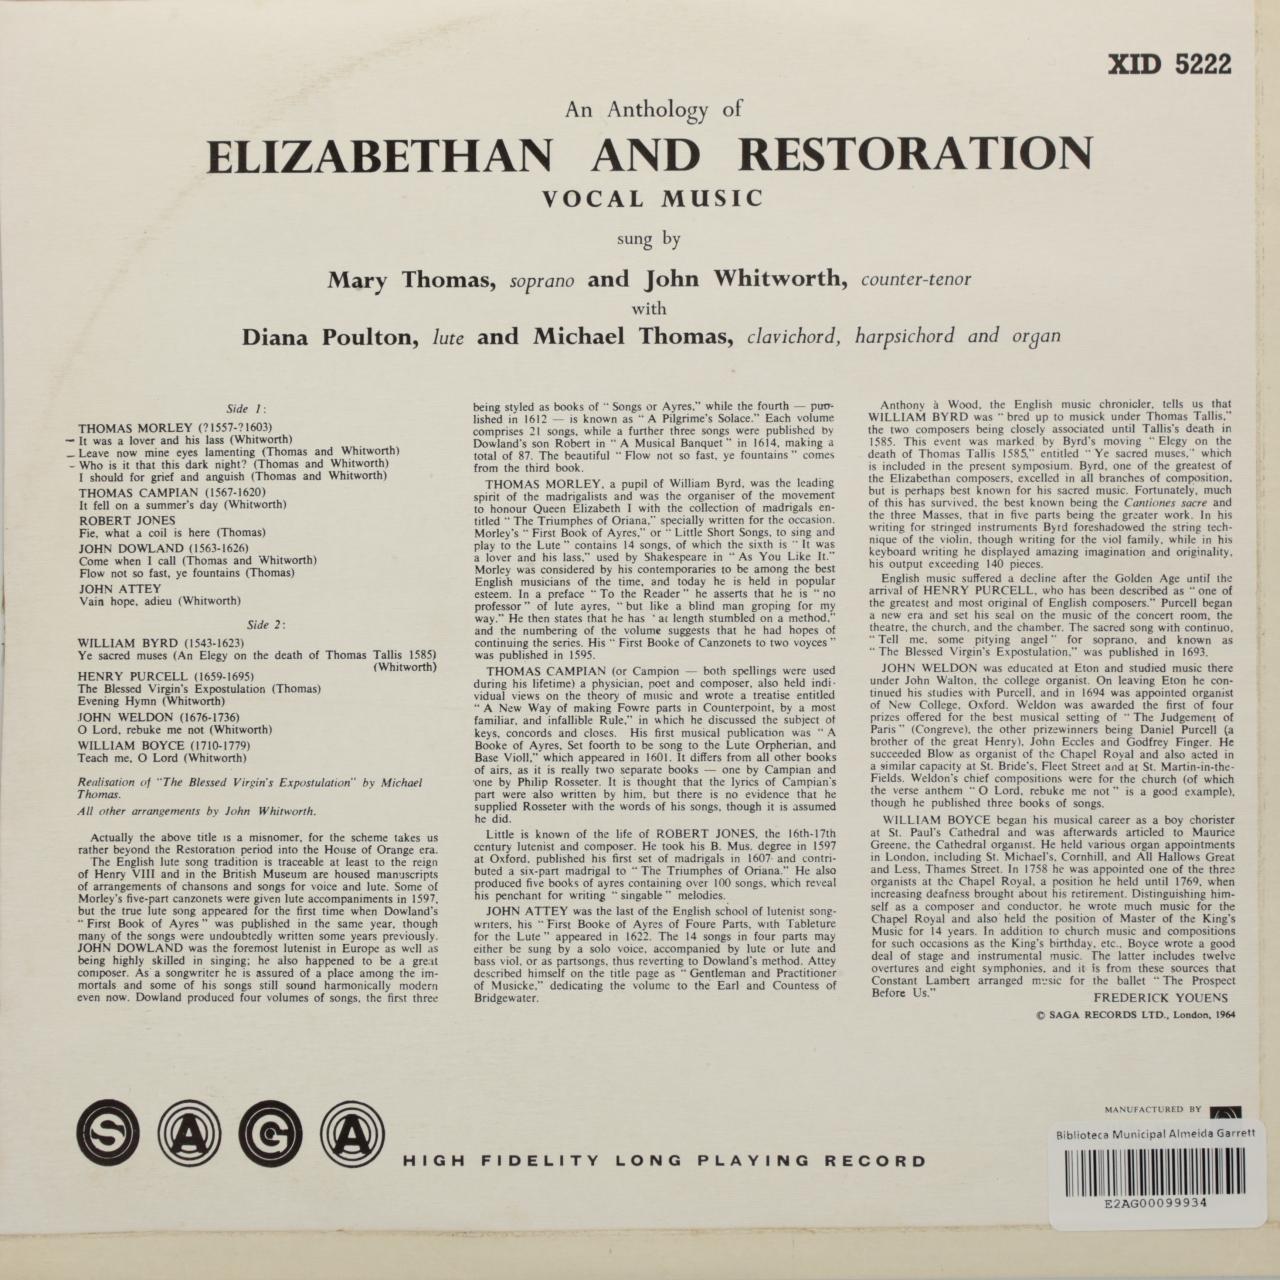 An Anthology of Elizabethan & Restoration Vocal Music